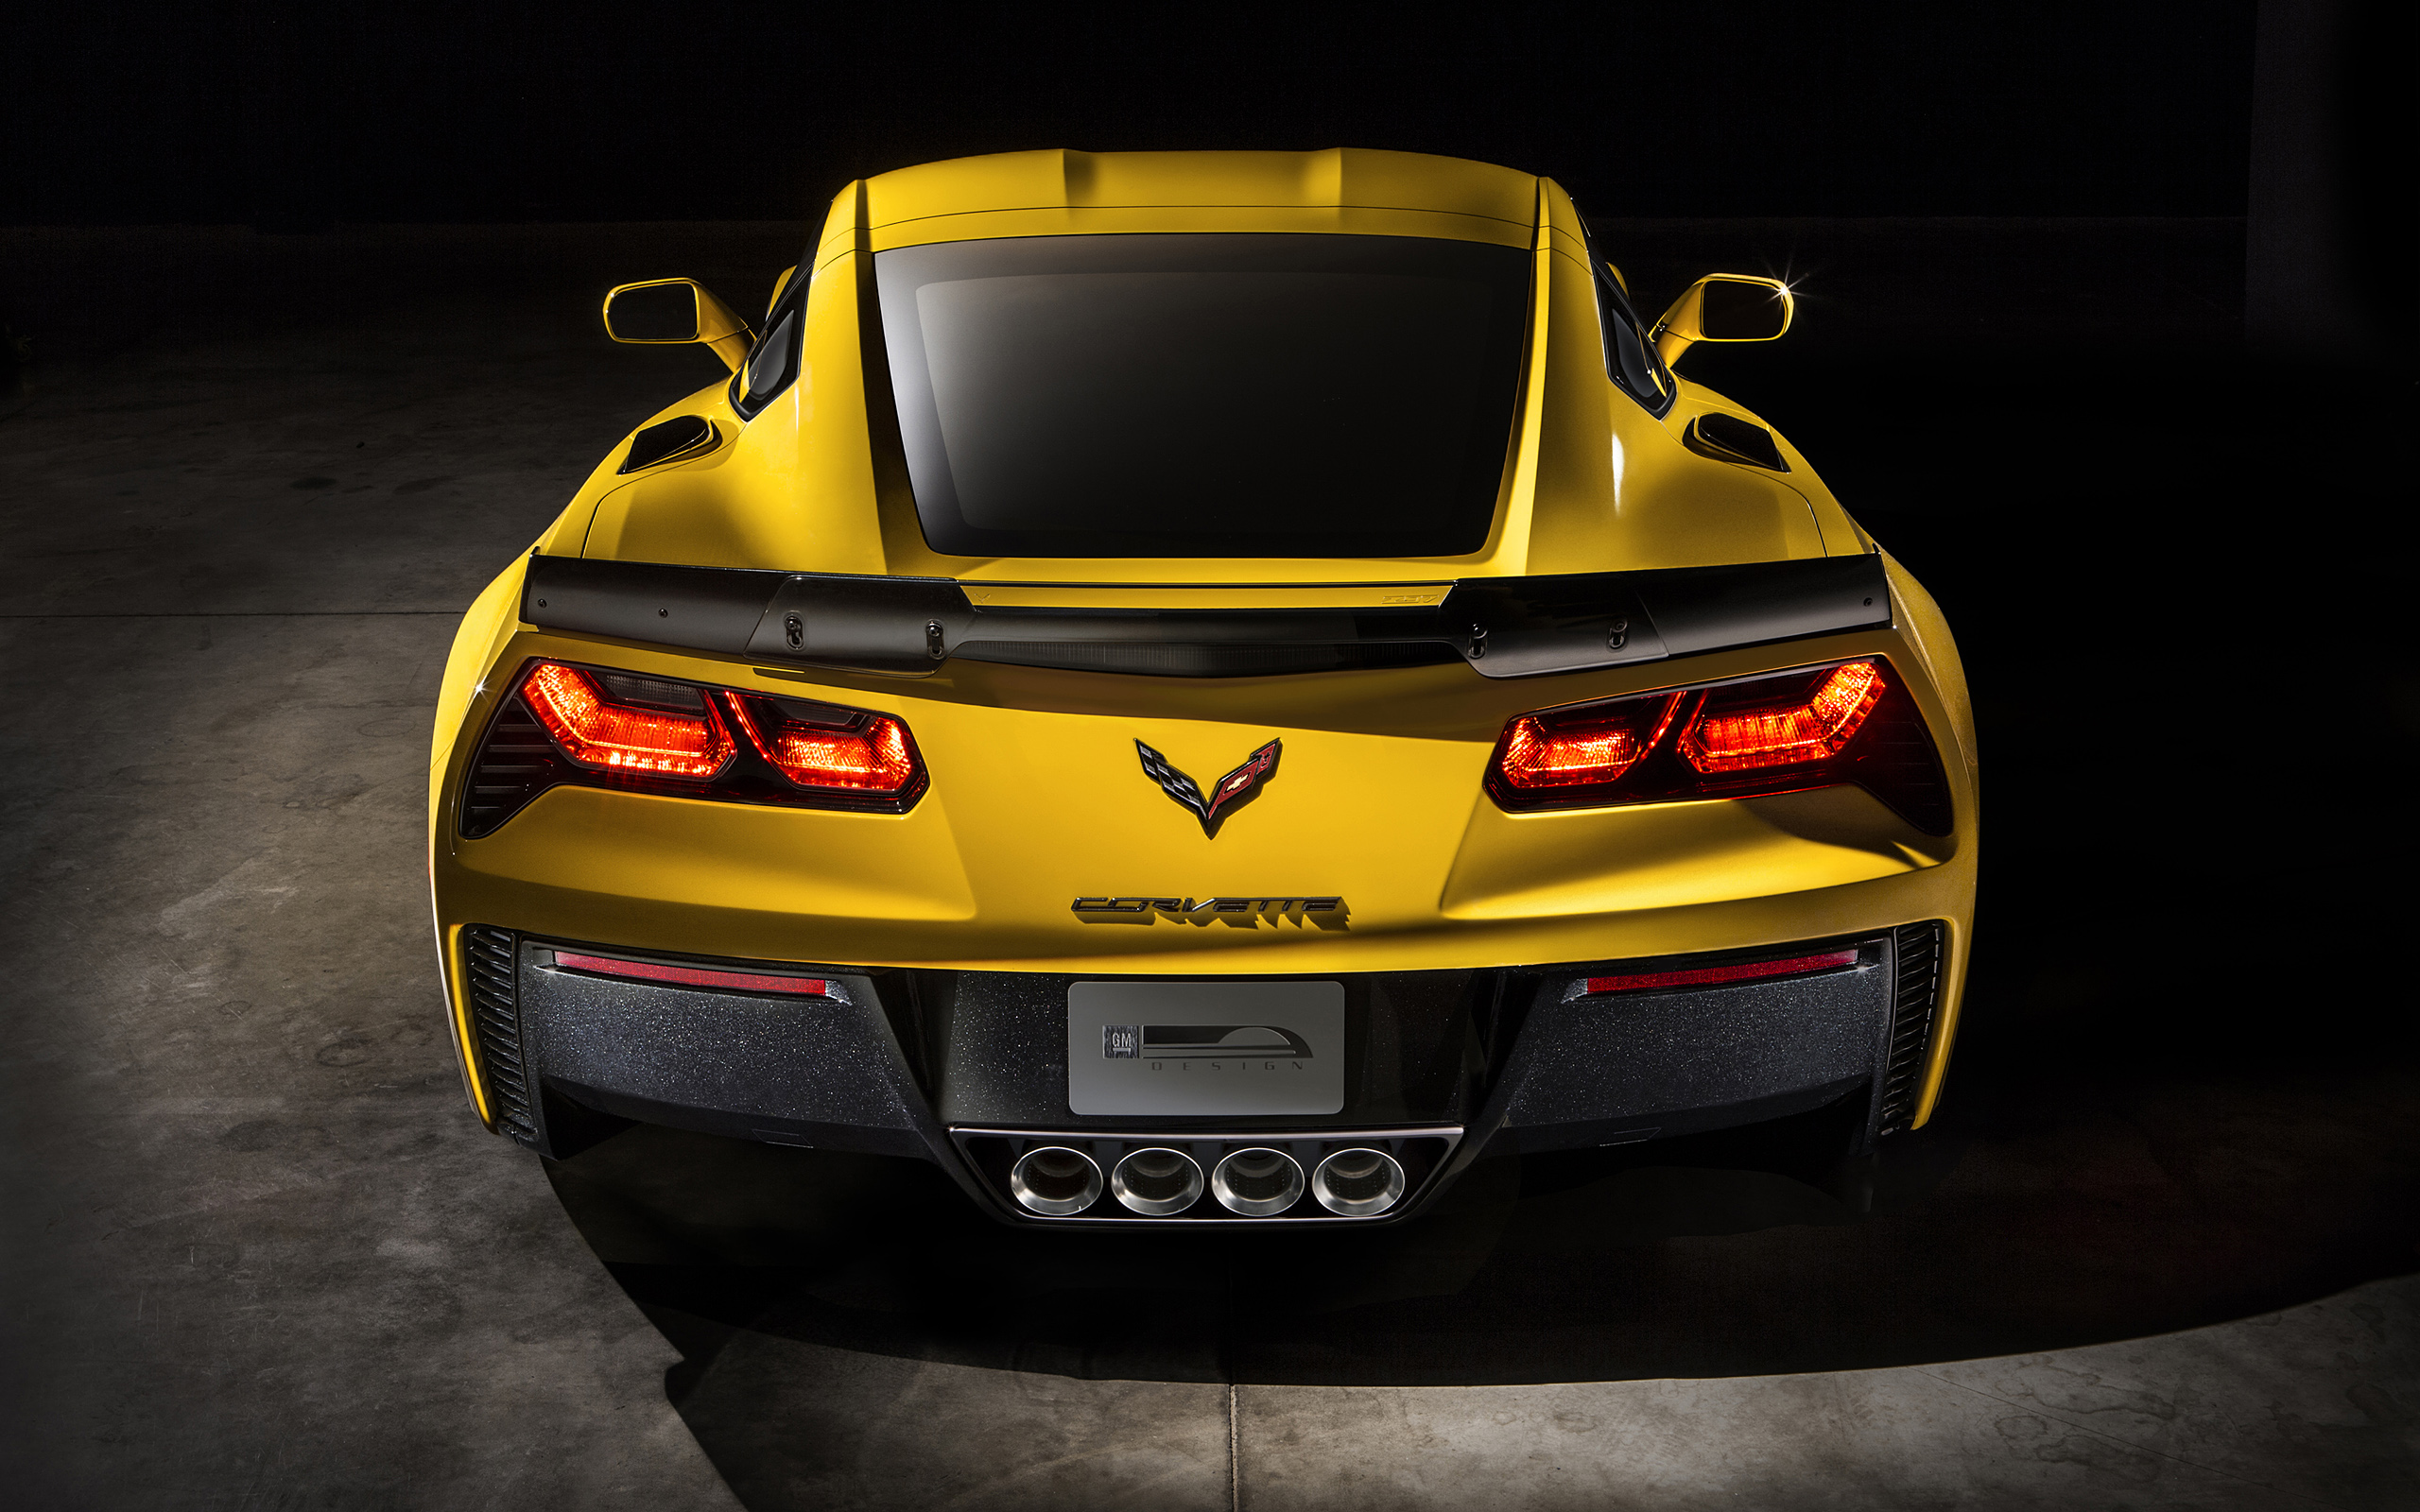  2015 Chevrolet Corvette Z06 Wallpaper.